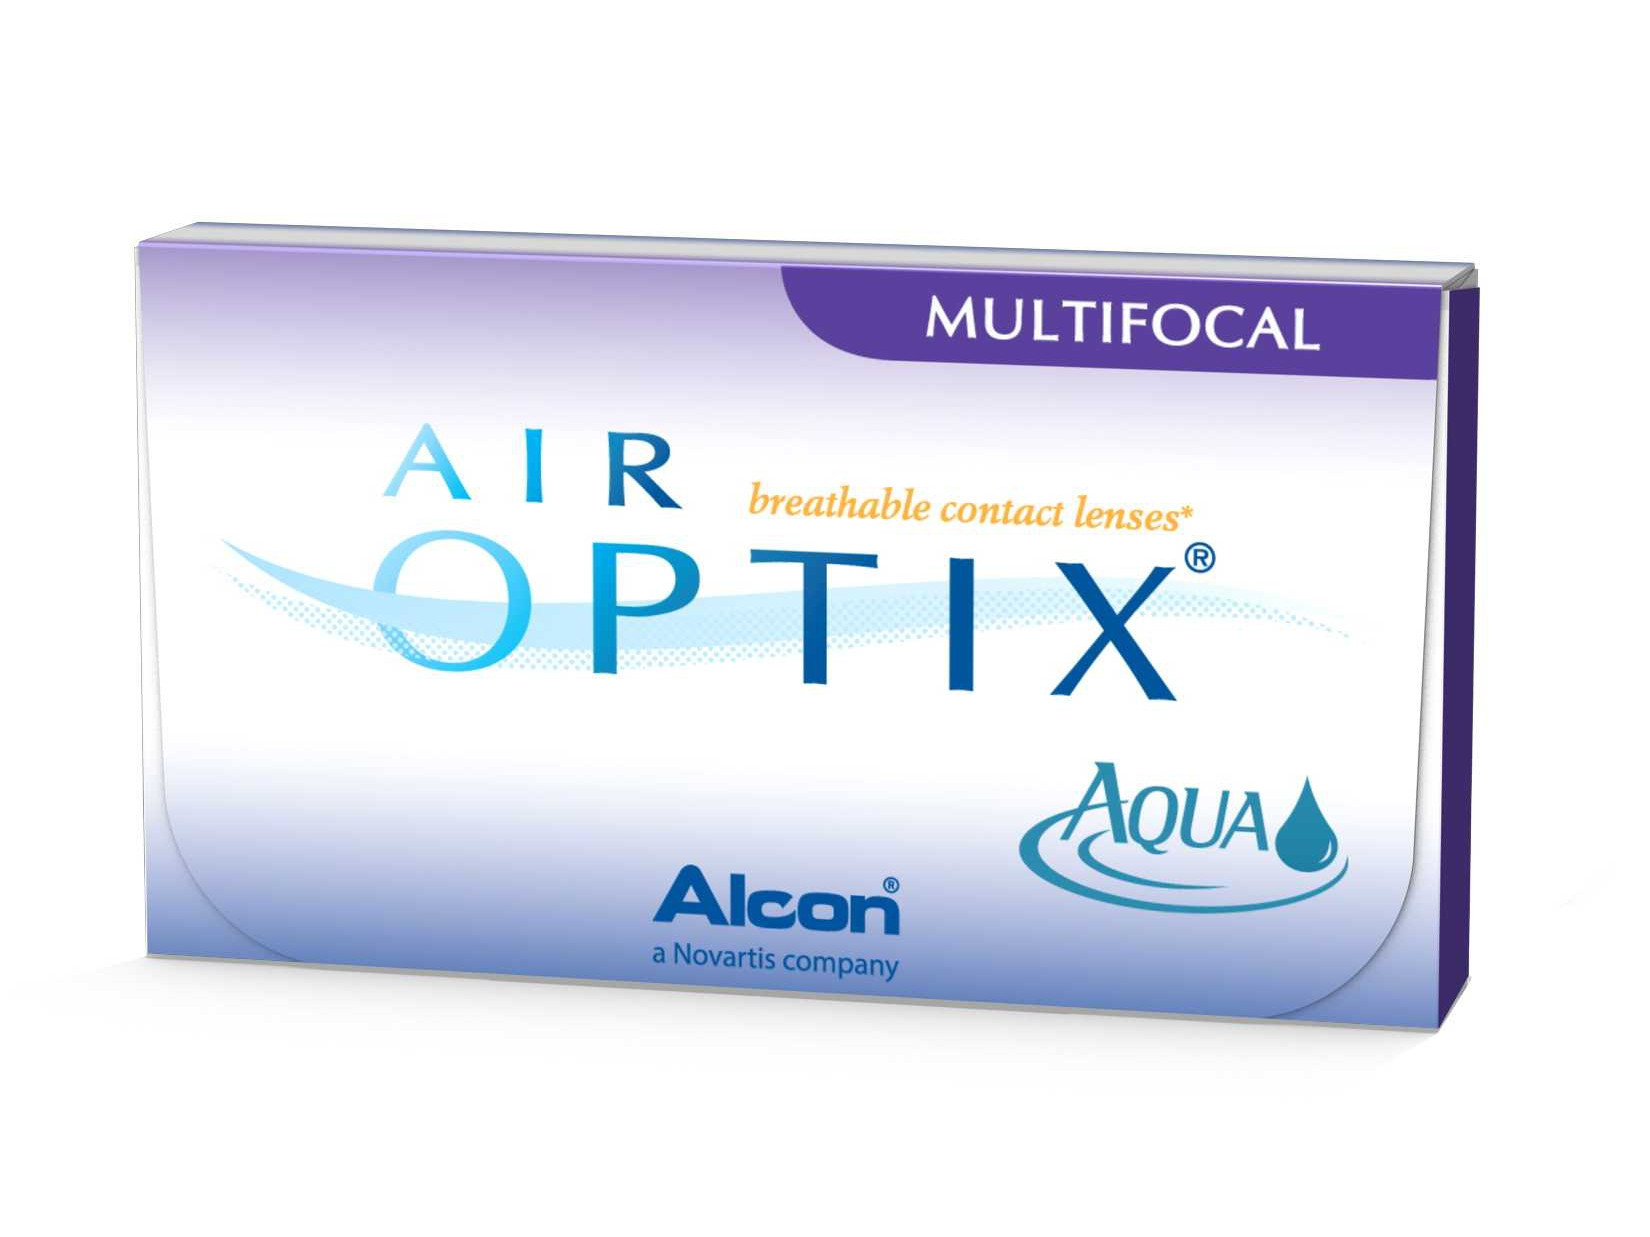 lentilles-alcon-ciba-vision-air-optix-aqua-multifocal-6l